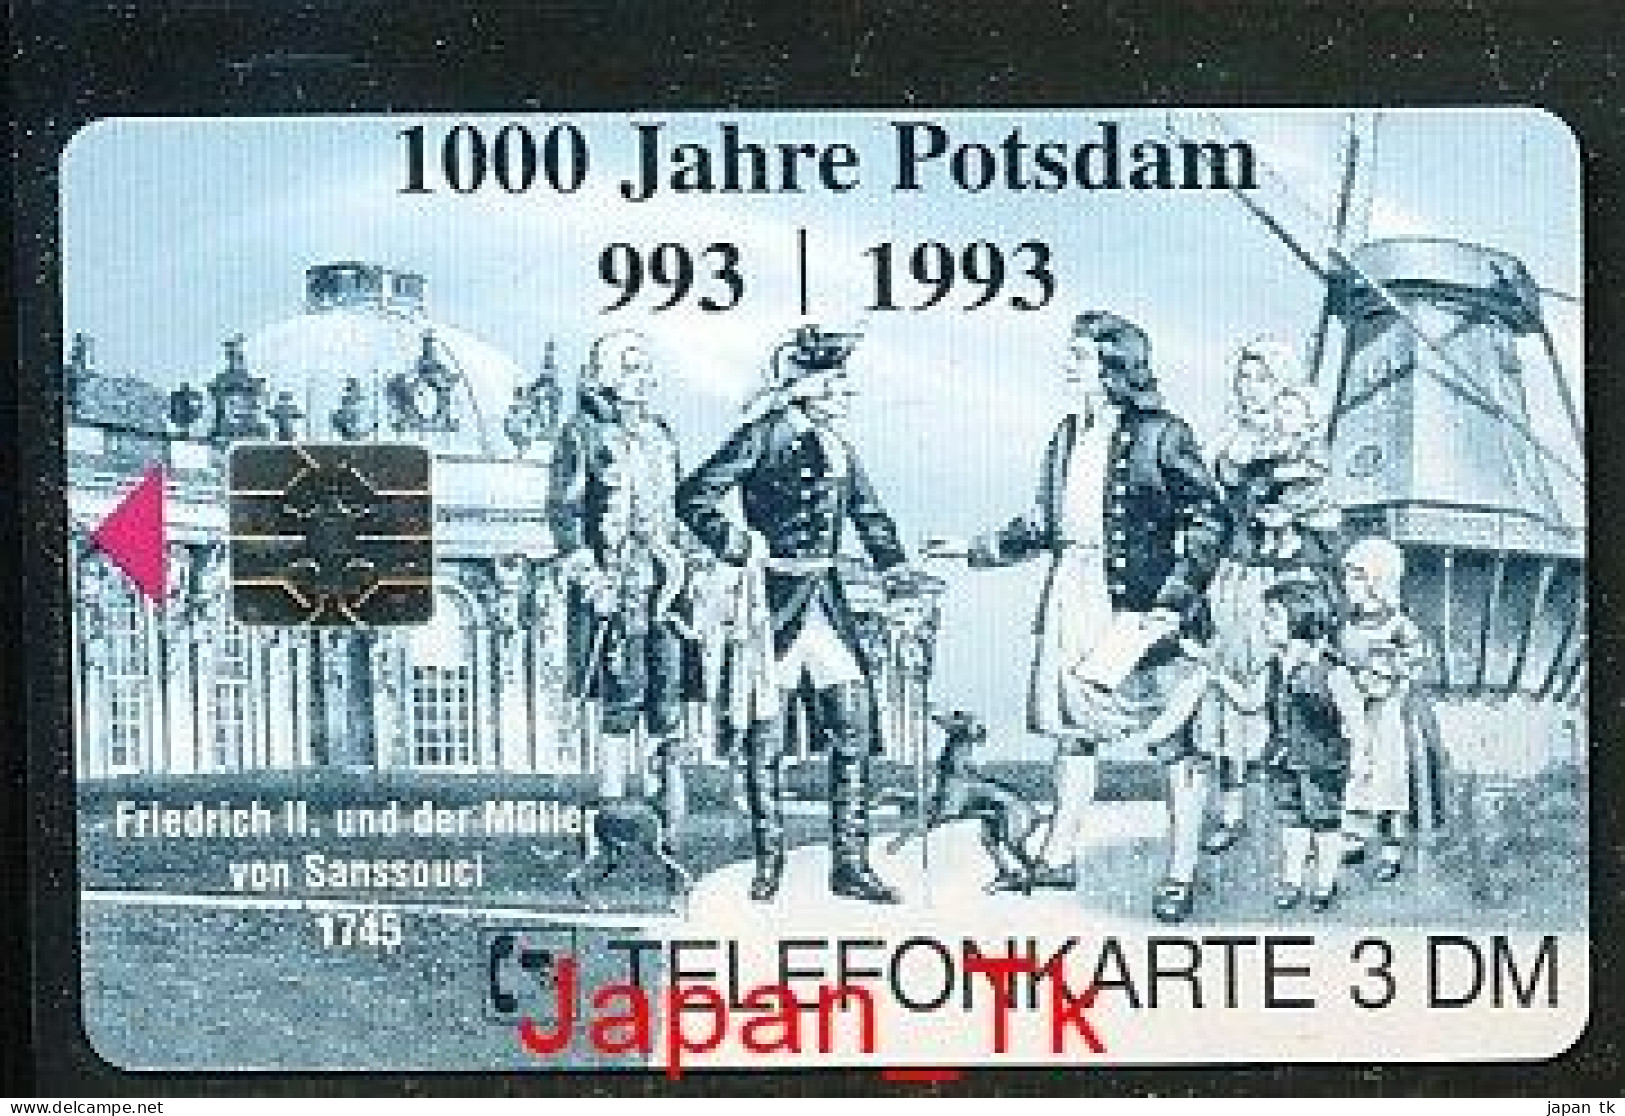 GERMANY O 1622 97 1000 Jahre Potsdam   - Aufl  500 - Siehe Scan - O-Series : Series Clientes Excluidos Servicio De Colección